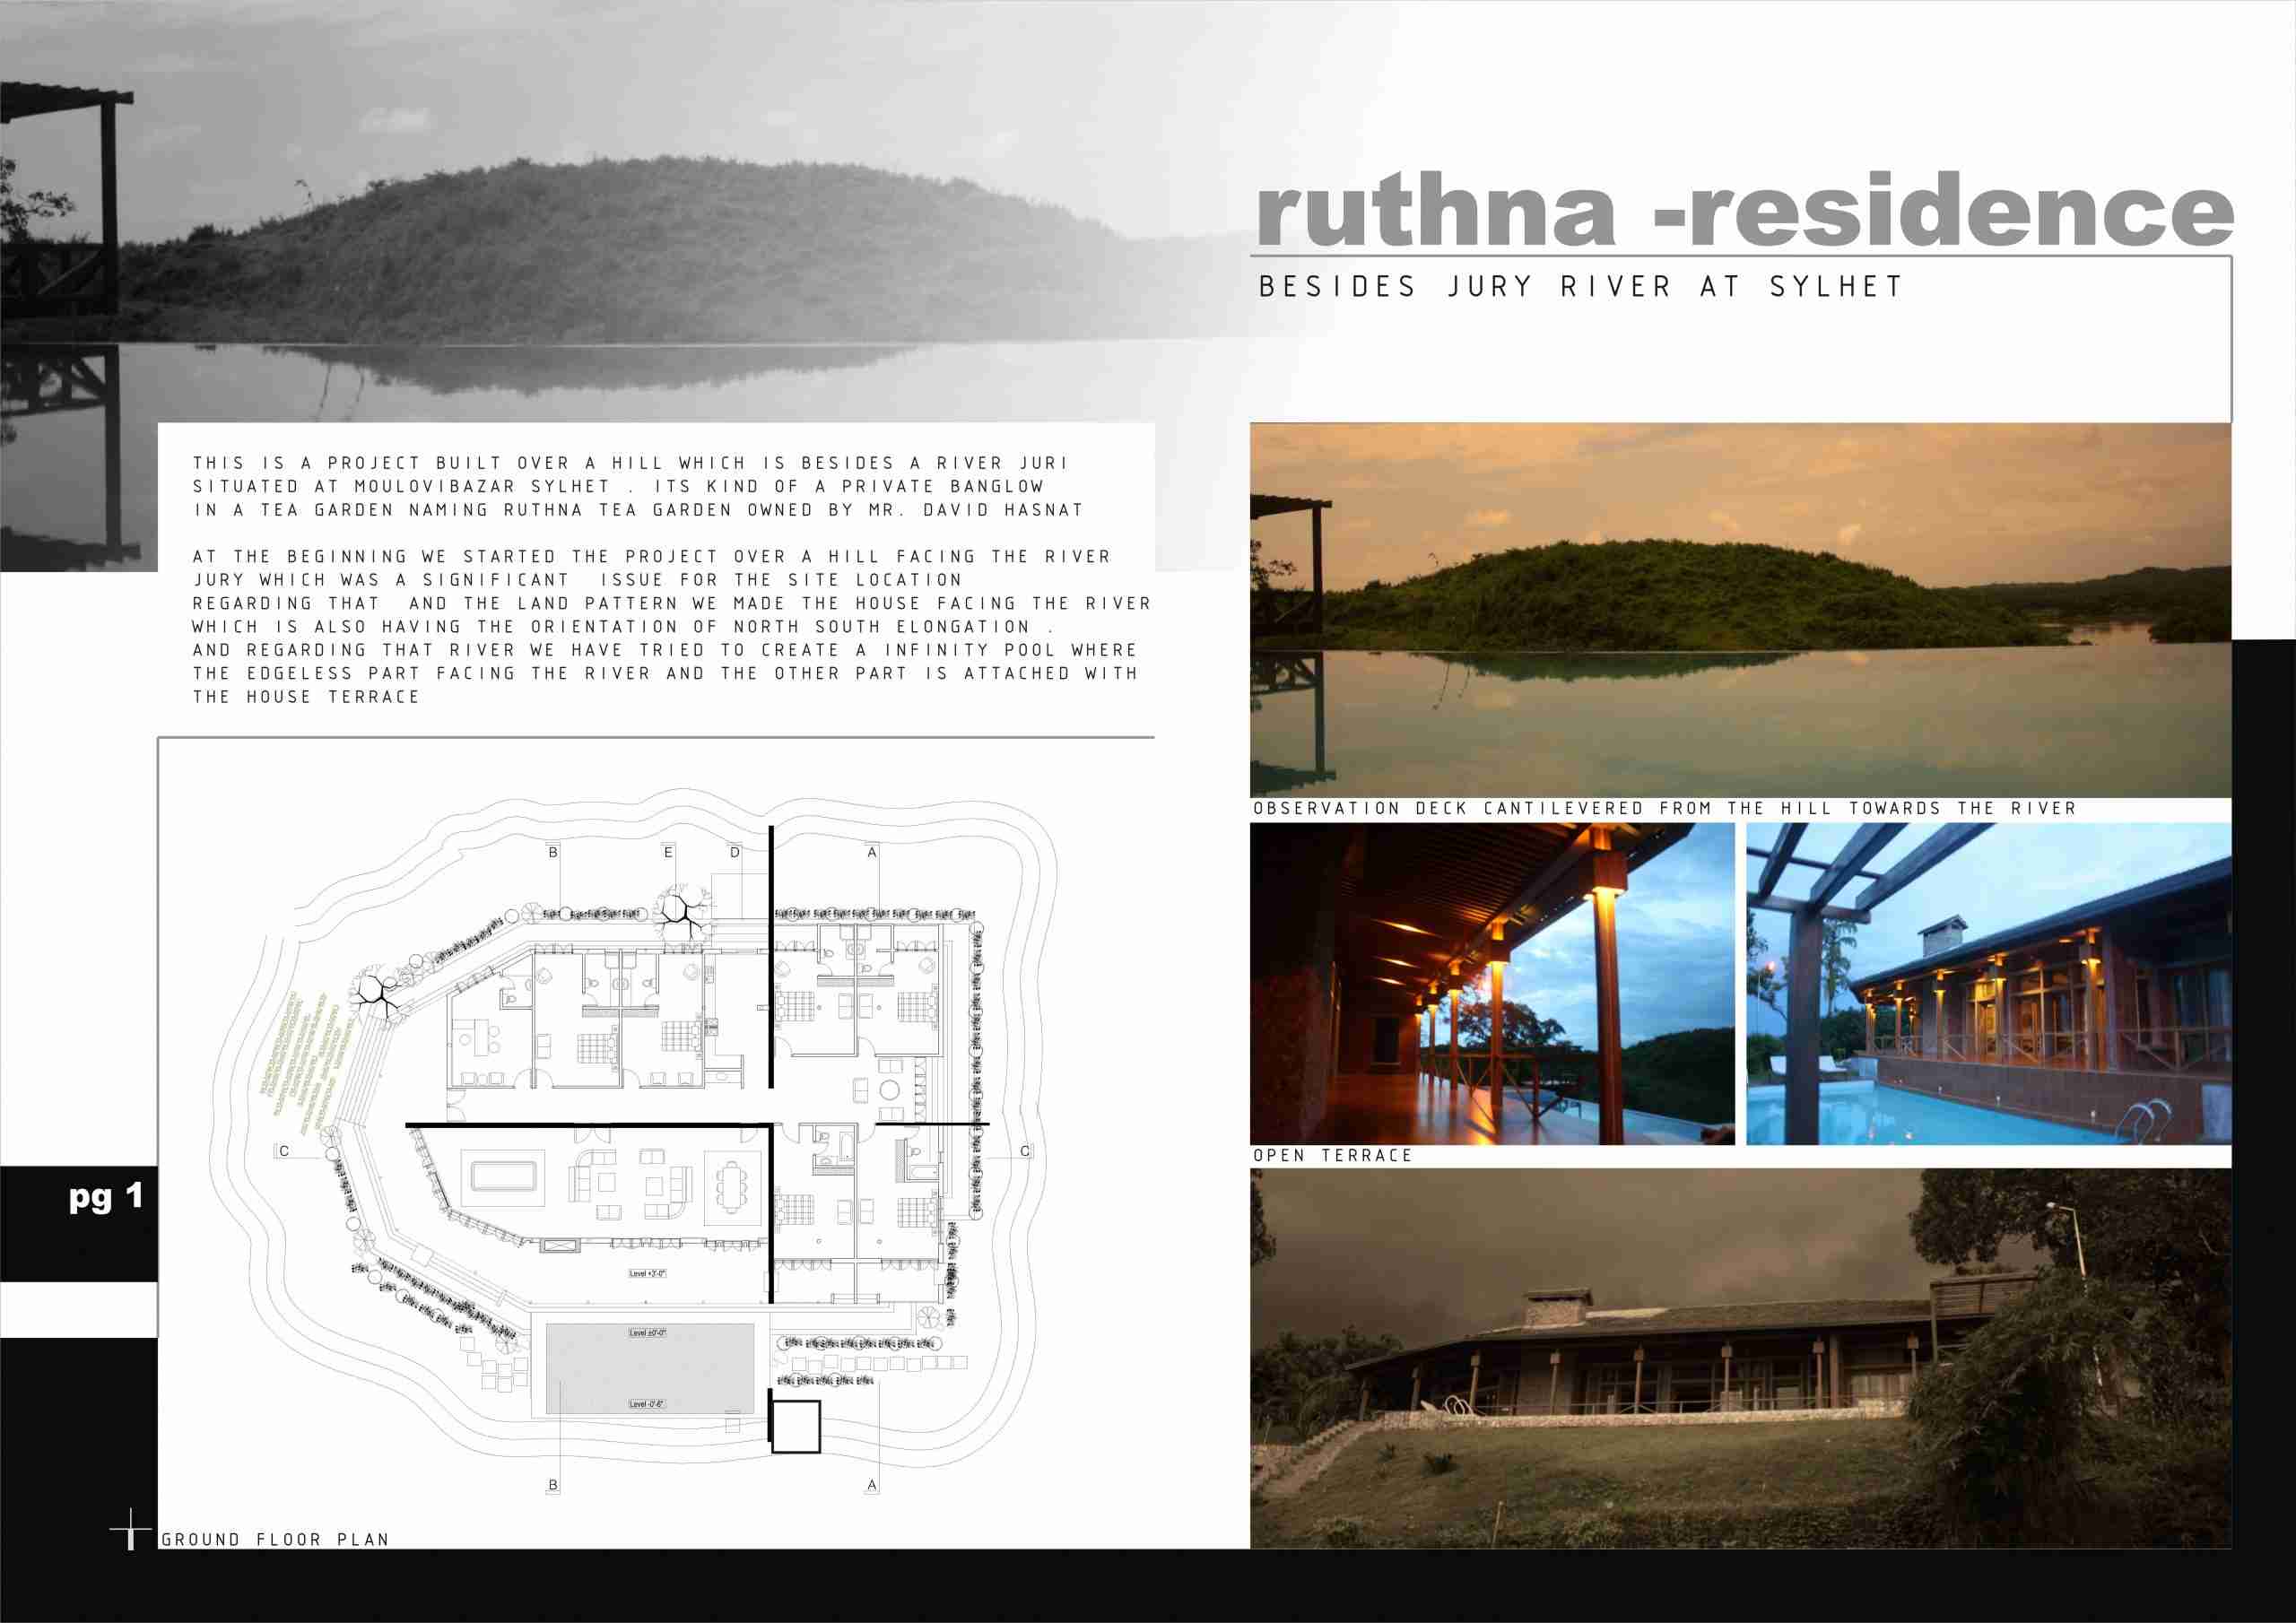 ruthna-residence